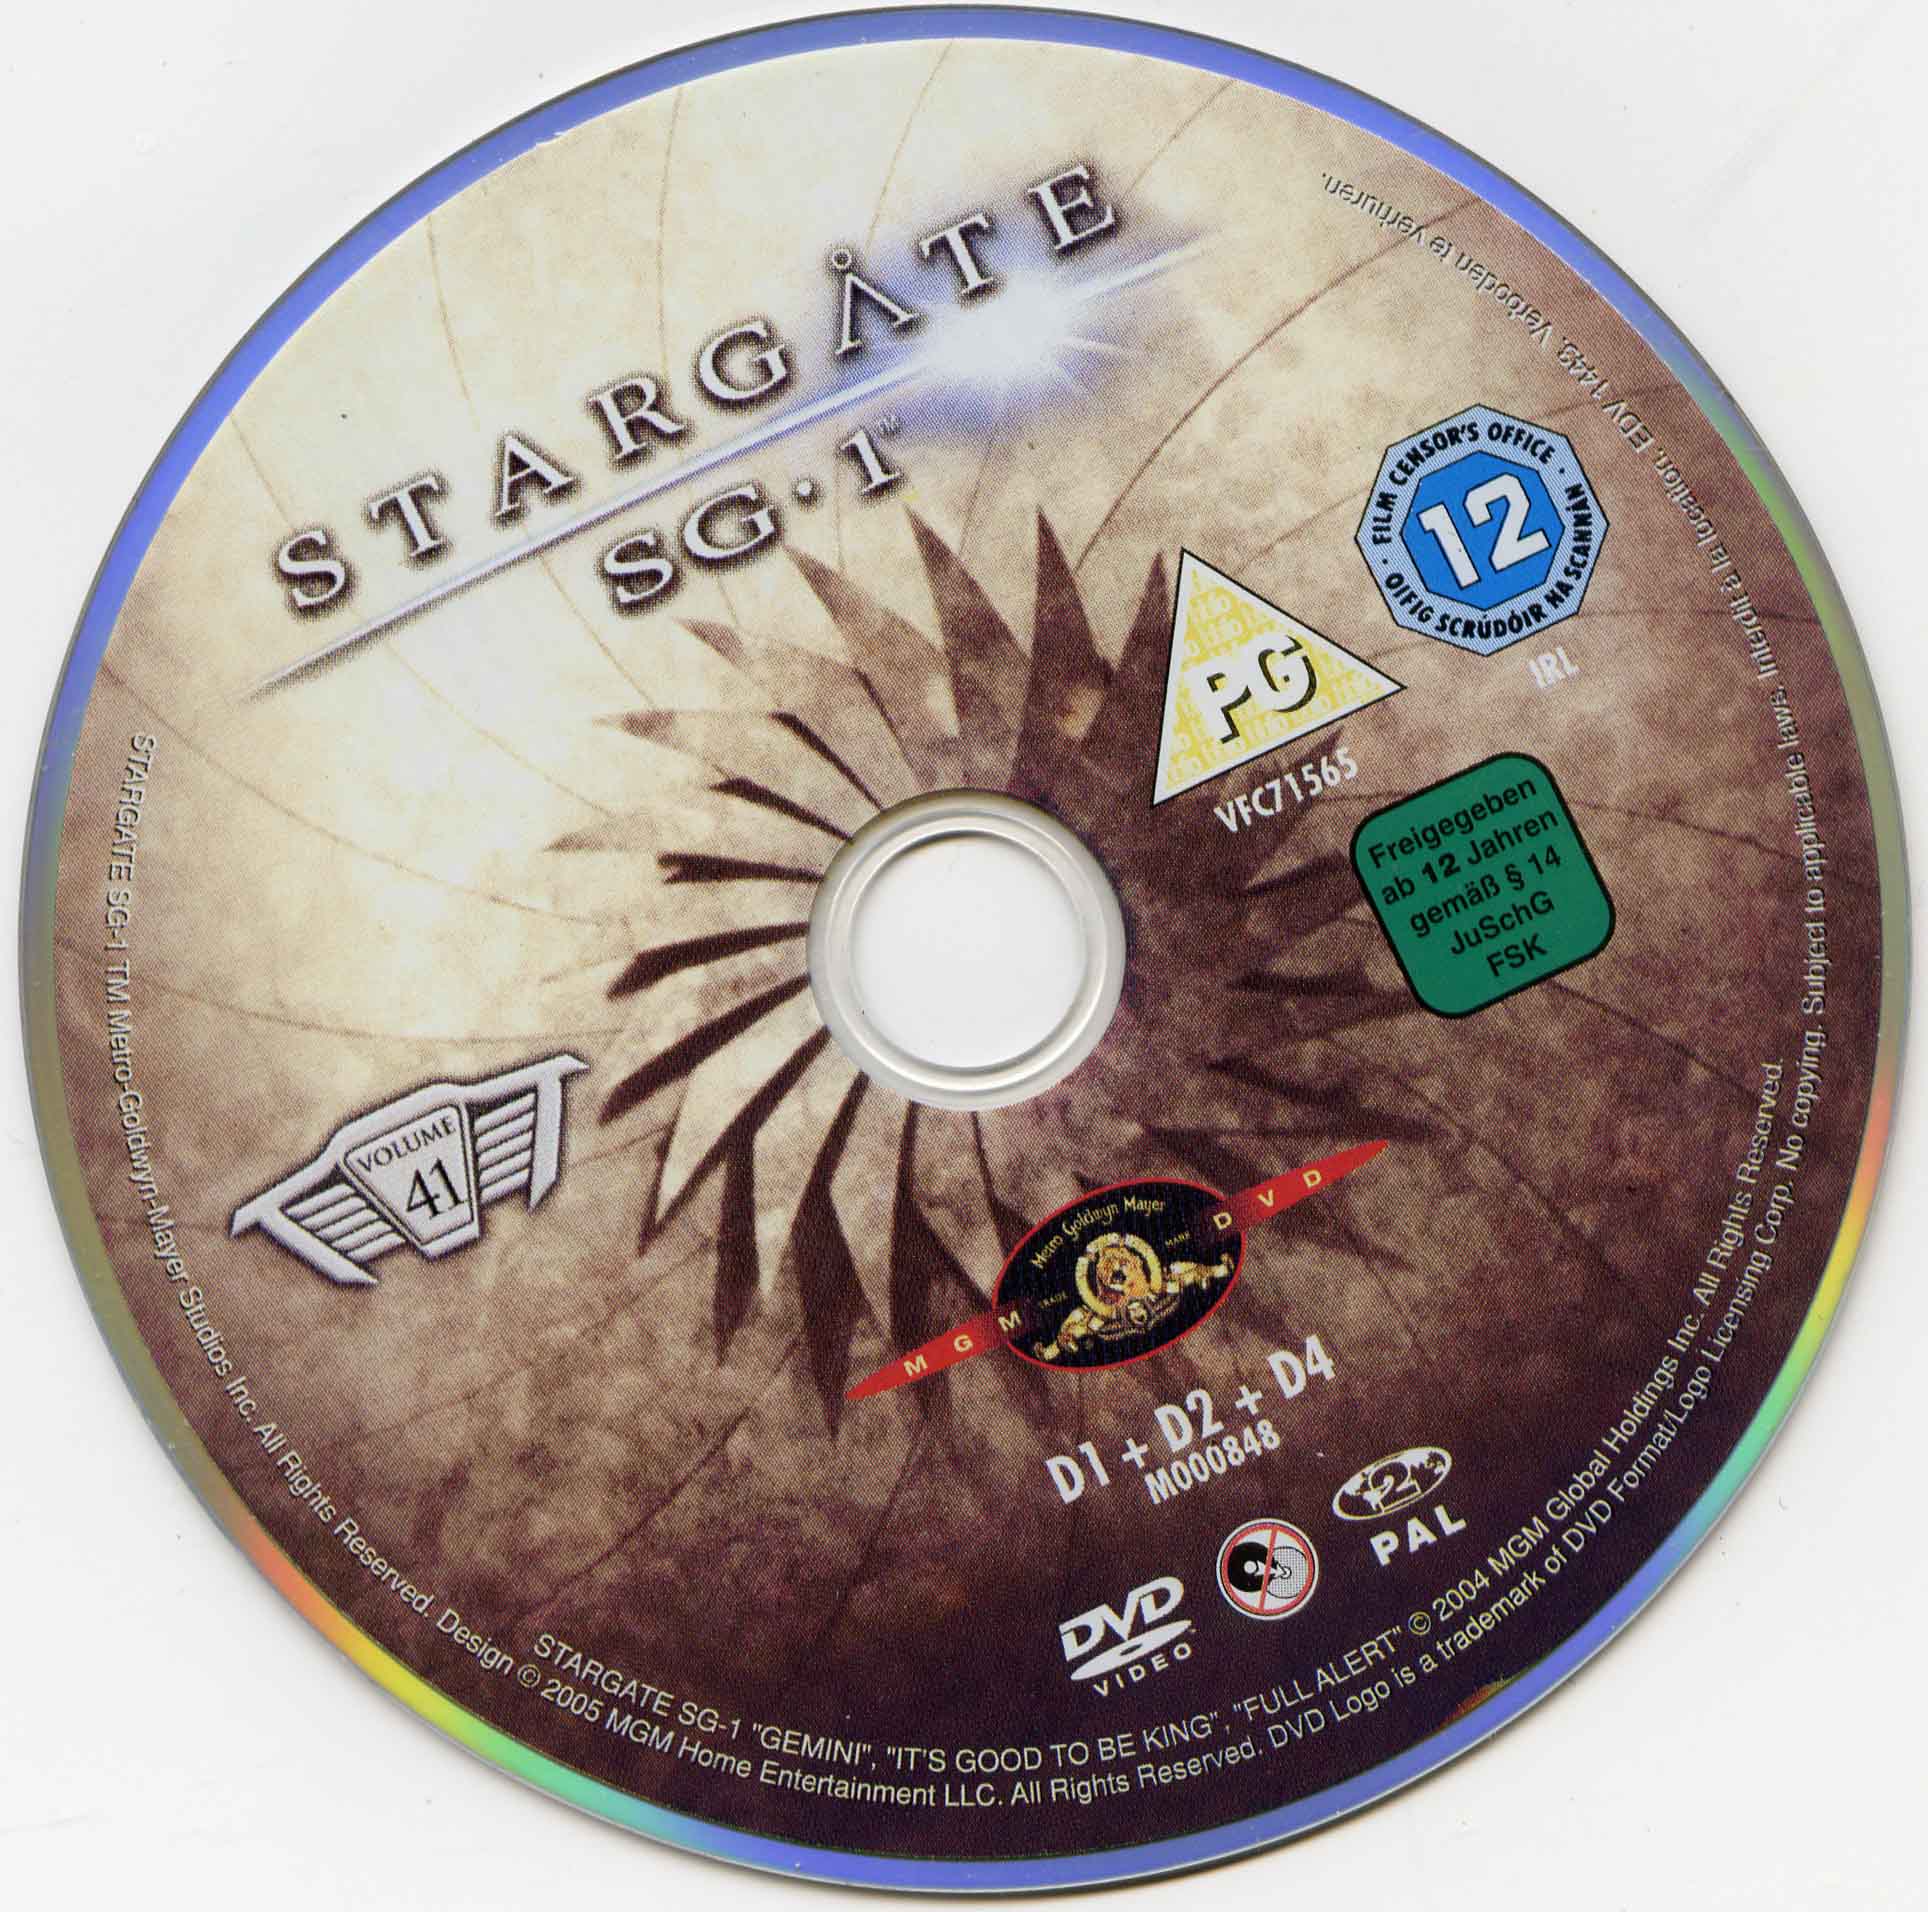 Stargate SG1 vol 41